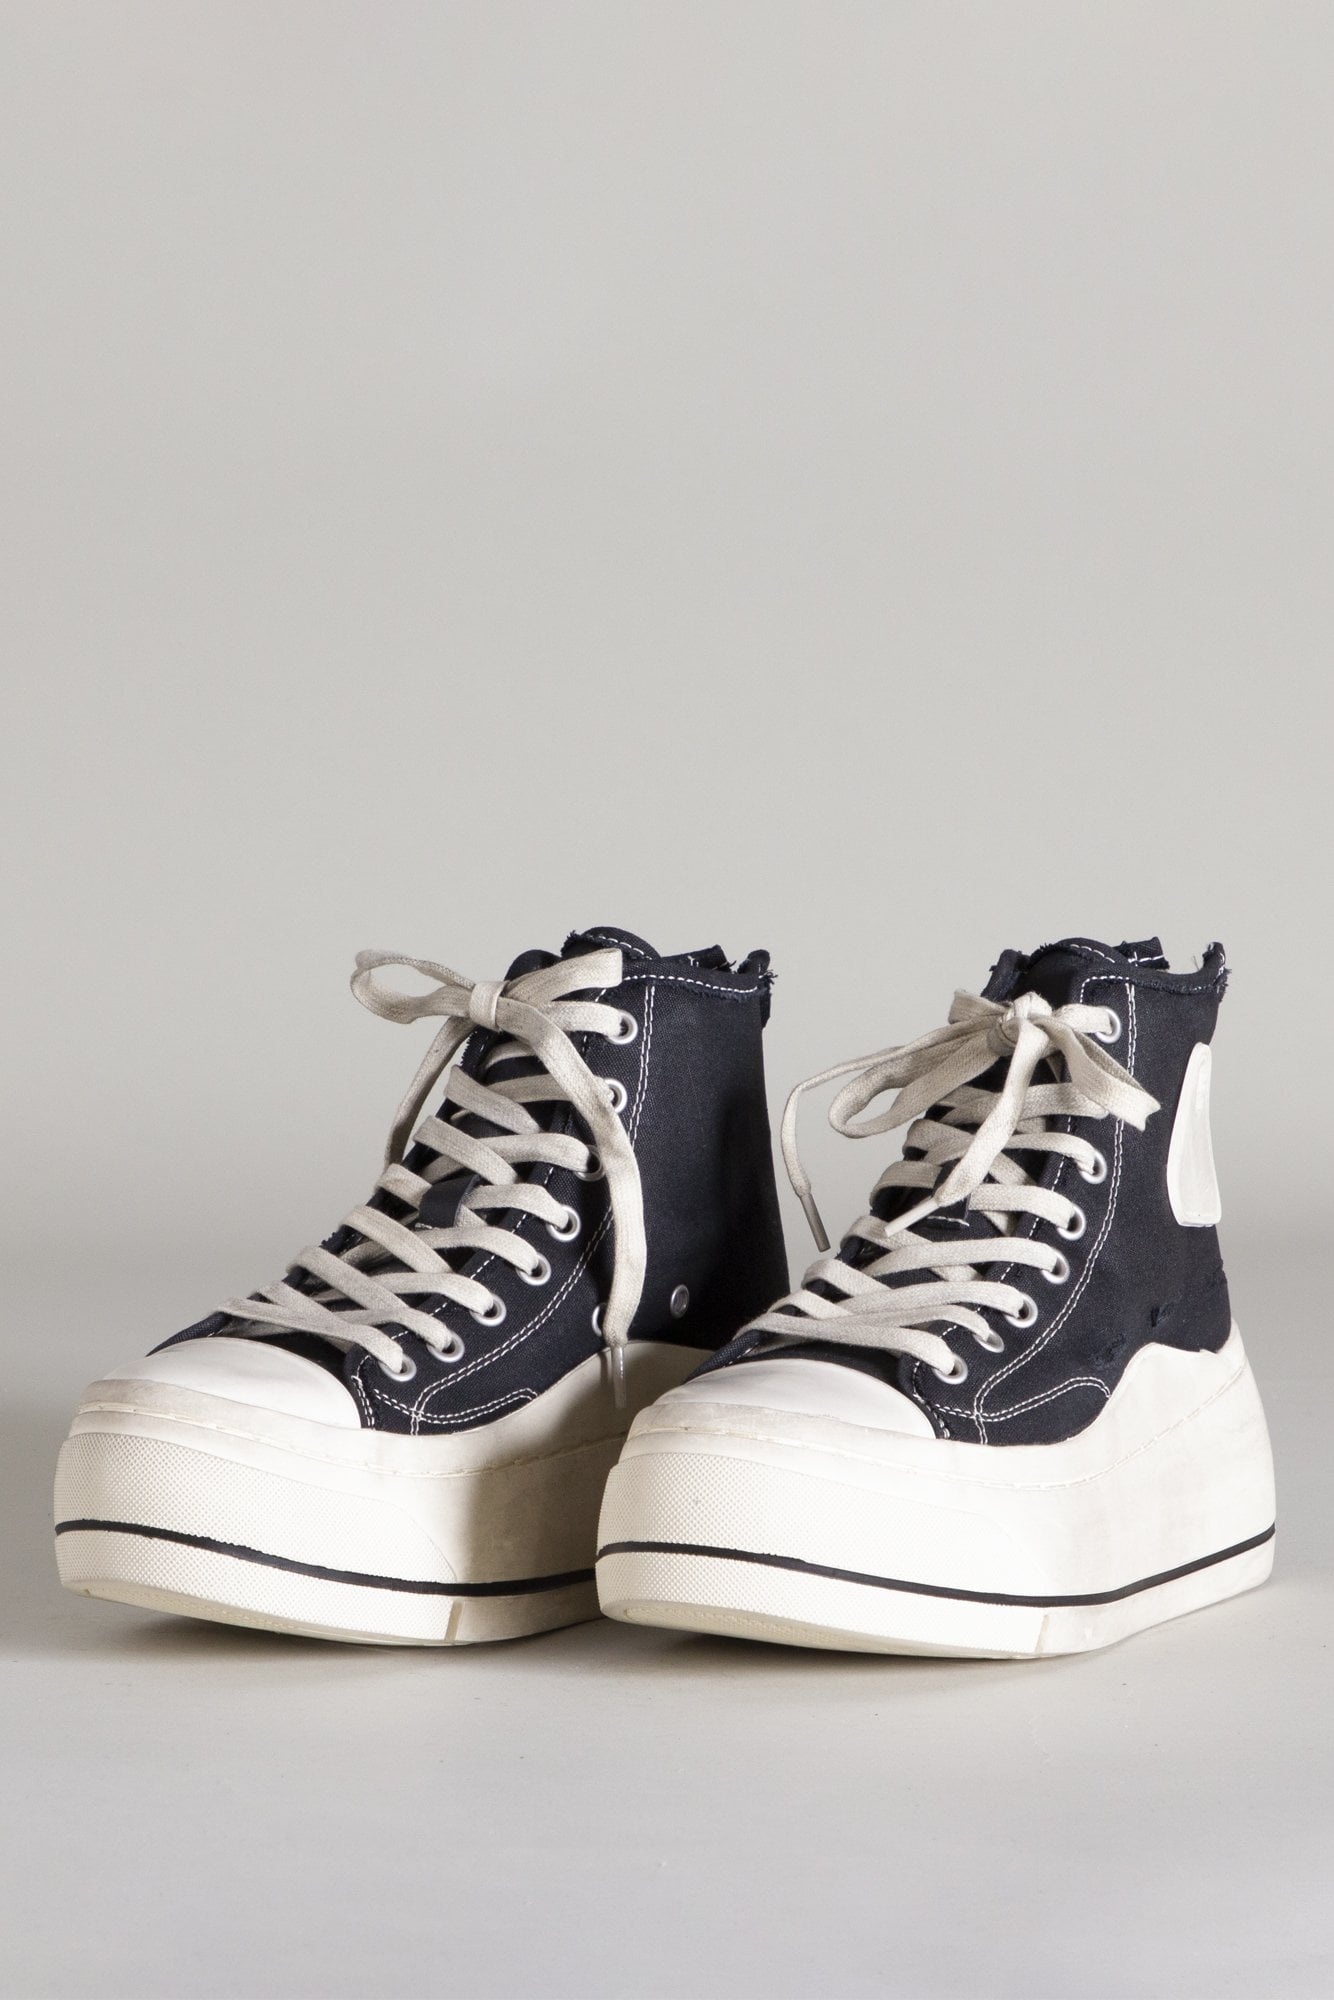 Kurt High Top Sneaker - Black | R13 Denim Official Site - 1